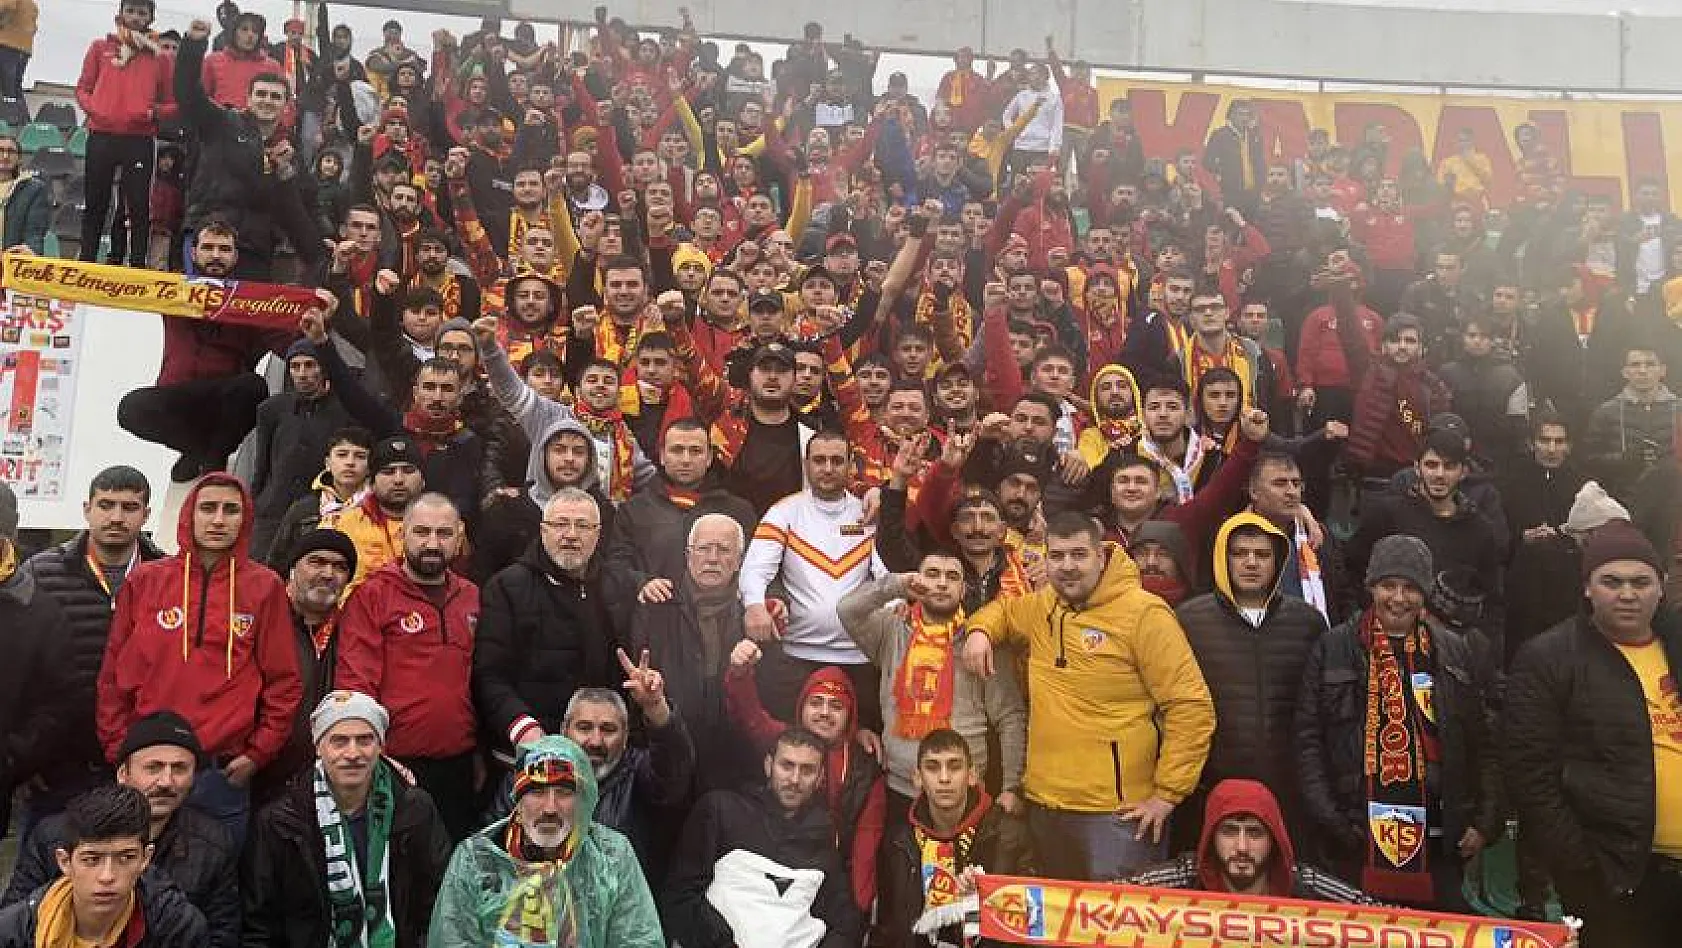 Kayserispor - Konyaspor maçı biletleri satışa çıktı